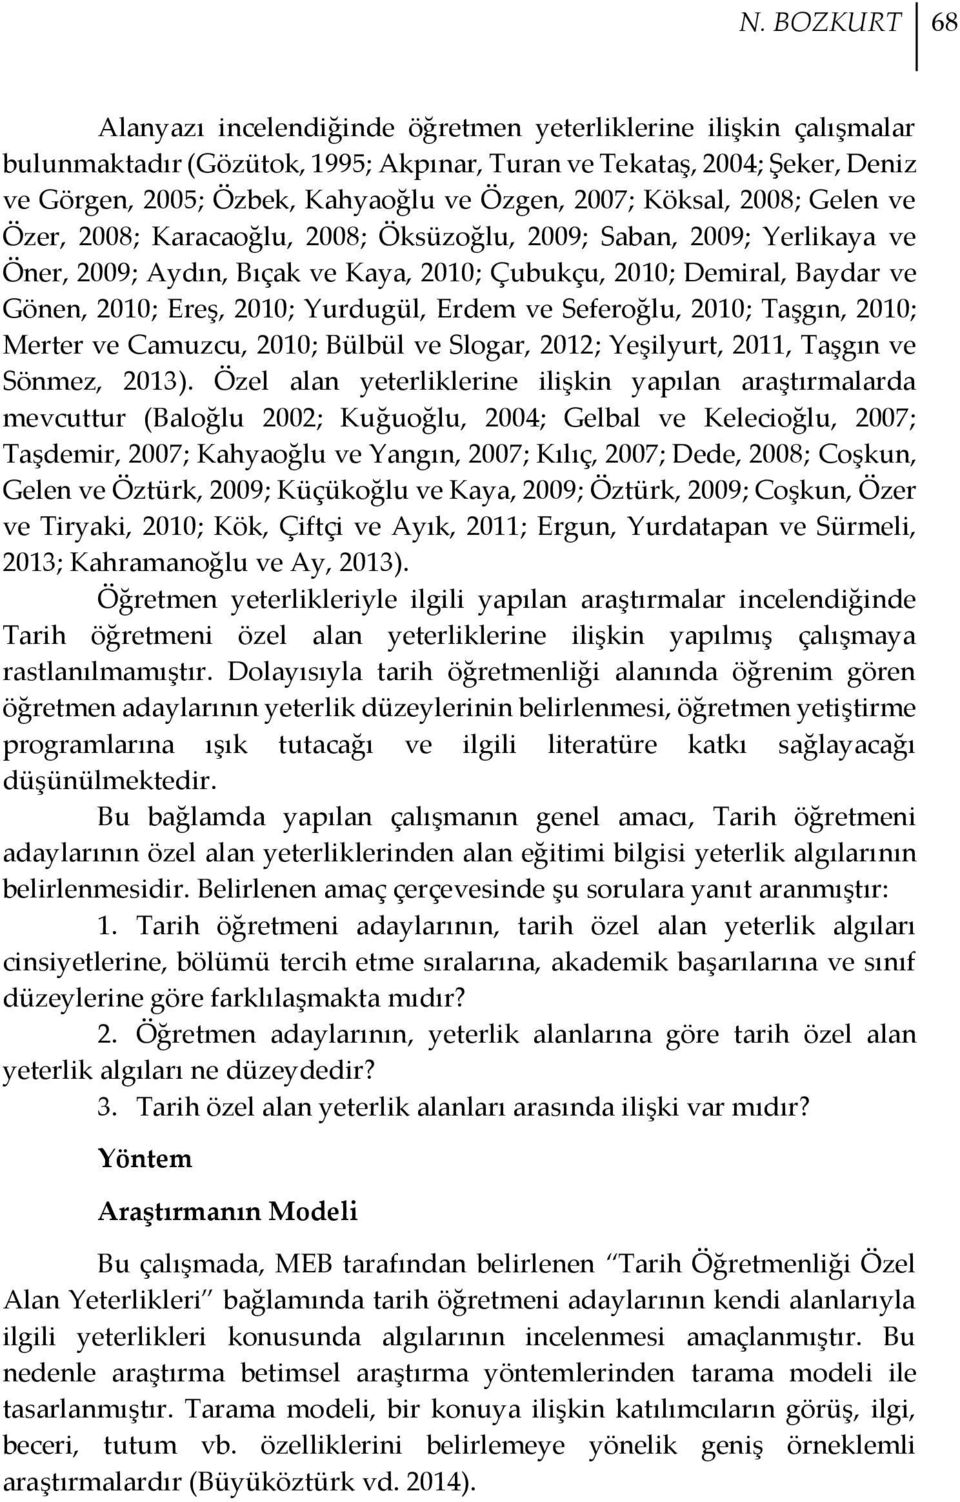 Ereş, 2010; Yurdugül, Erdem ve Seferoğlu, 2010; Taşgın, 2010; Merter ve Camuzcu, 2010; Bülbül ve Slogar, 2012; Yeşilyurt, 2011, Taşgın ve Sönmez, 2013).